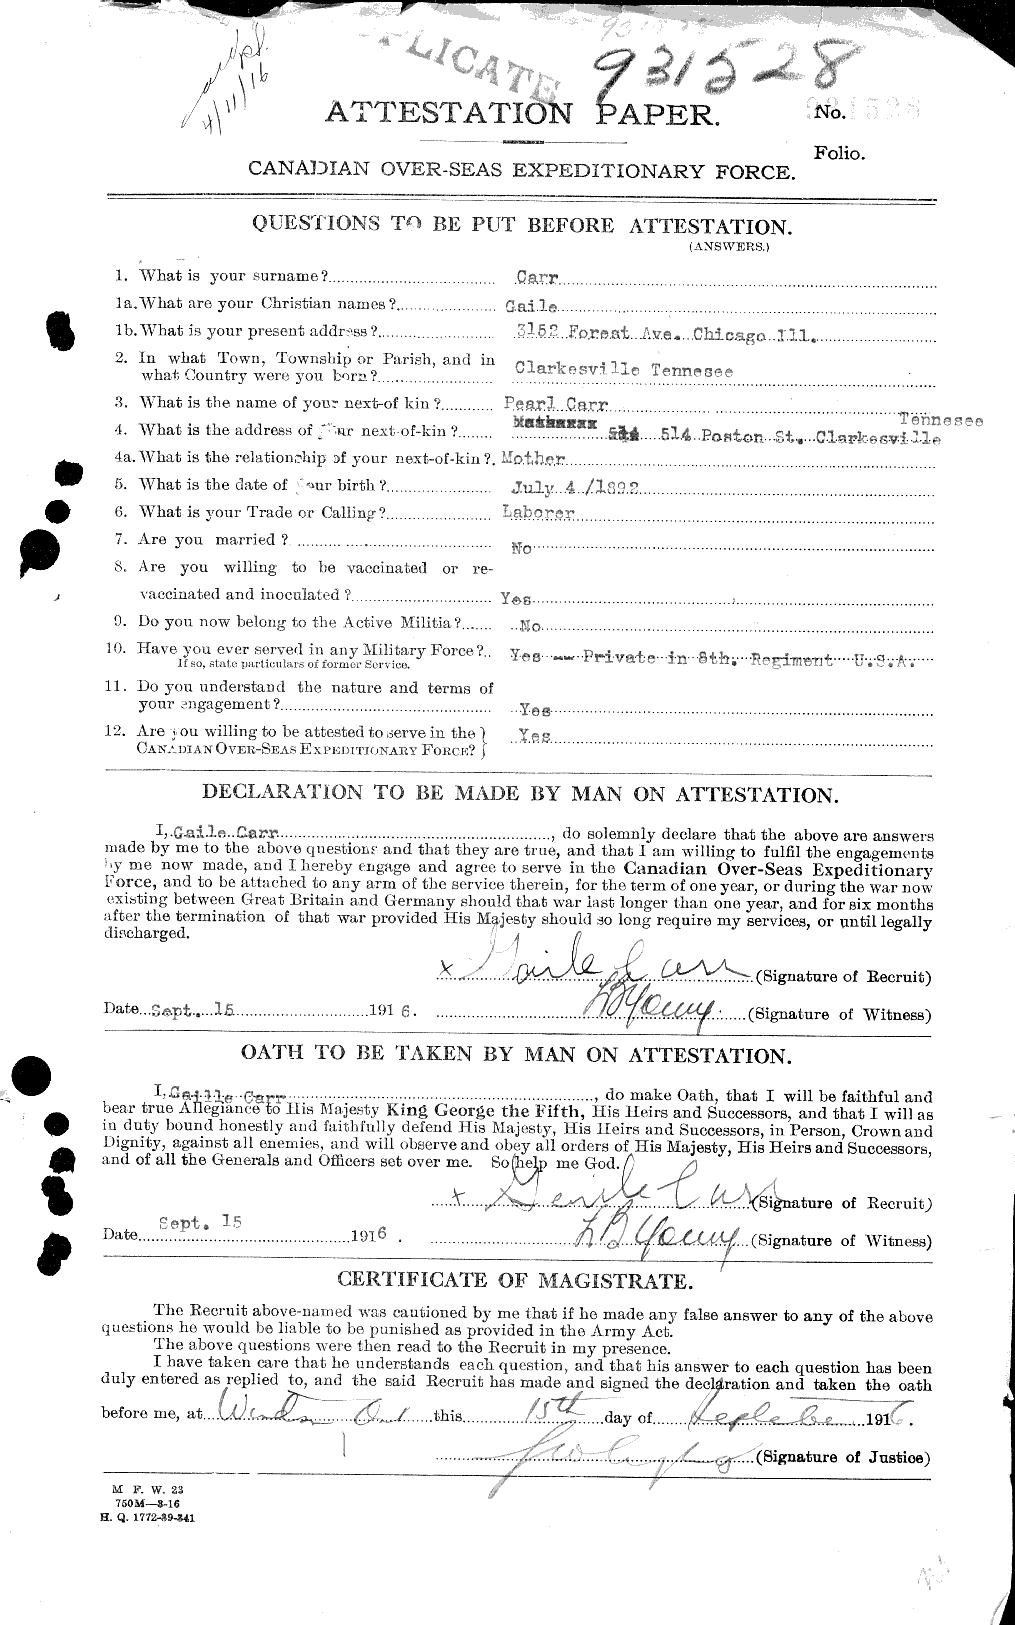 Dossiers du Personnel de la Première Guerre mondiale - CEC 010275a